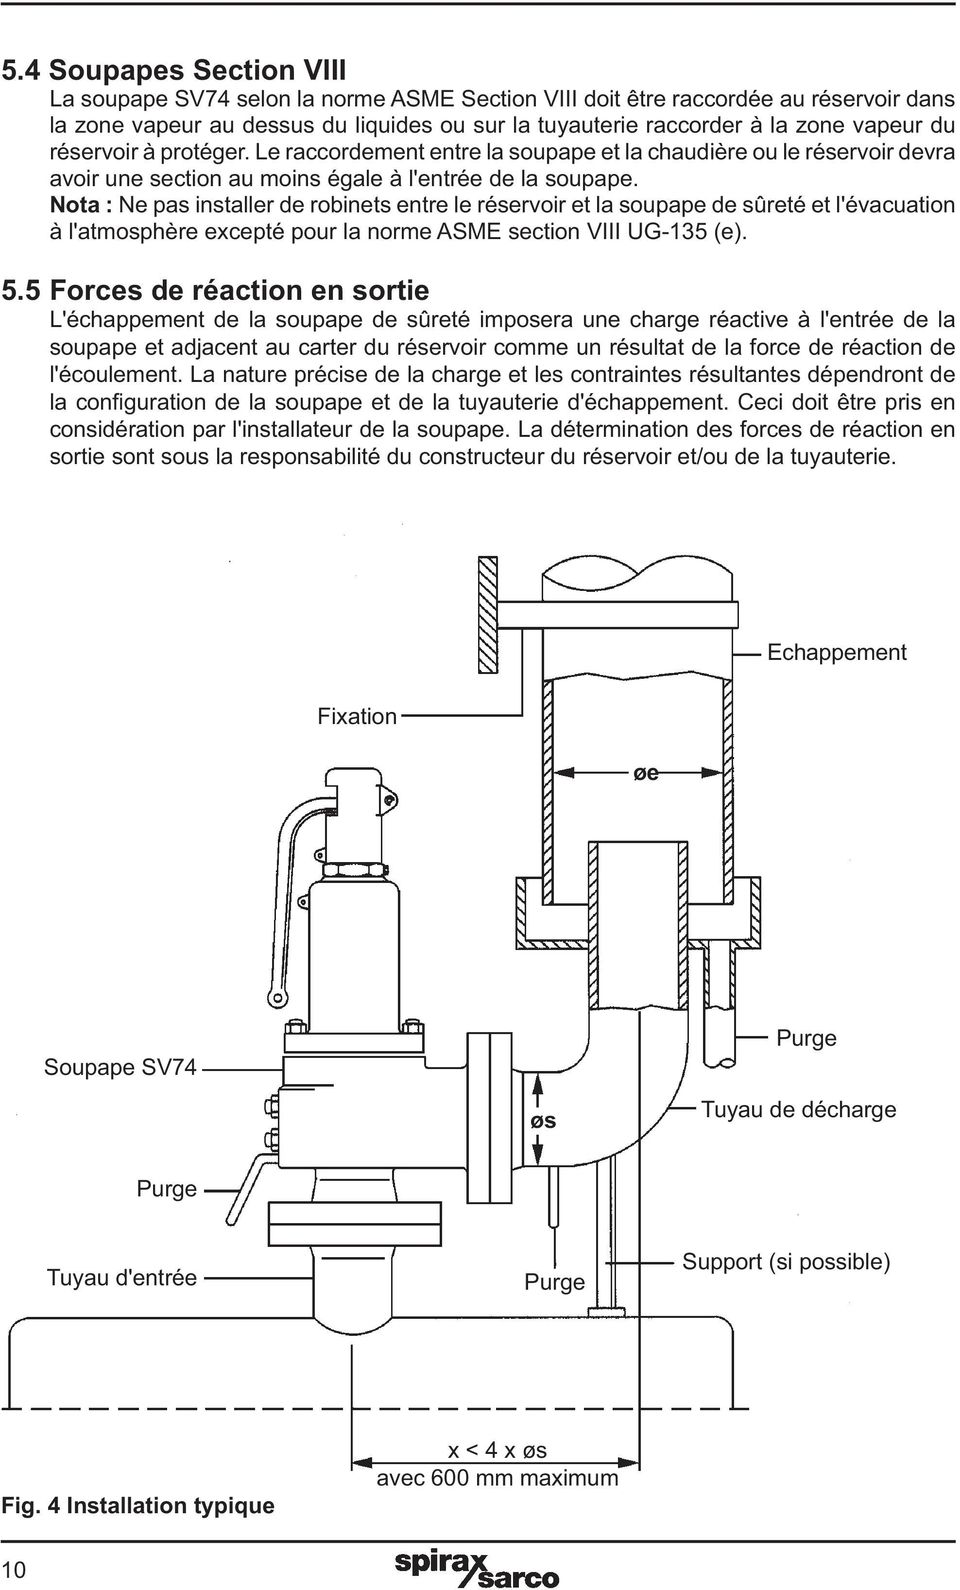 Nota : Ne pas installer de robinets entre le réservoir et la soupape de sûreté et l'évacuation à l'atmosphère excepté pour la norme ASME section VIII UG-135 (e). 5.